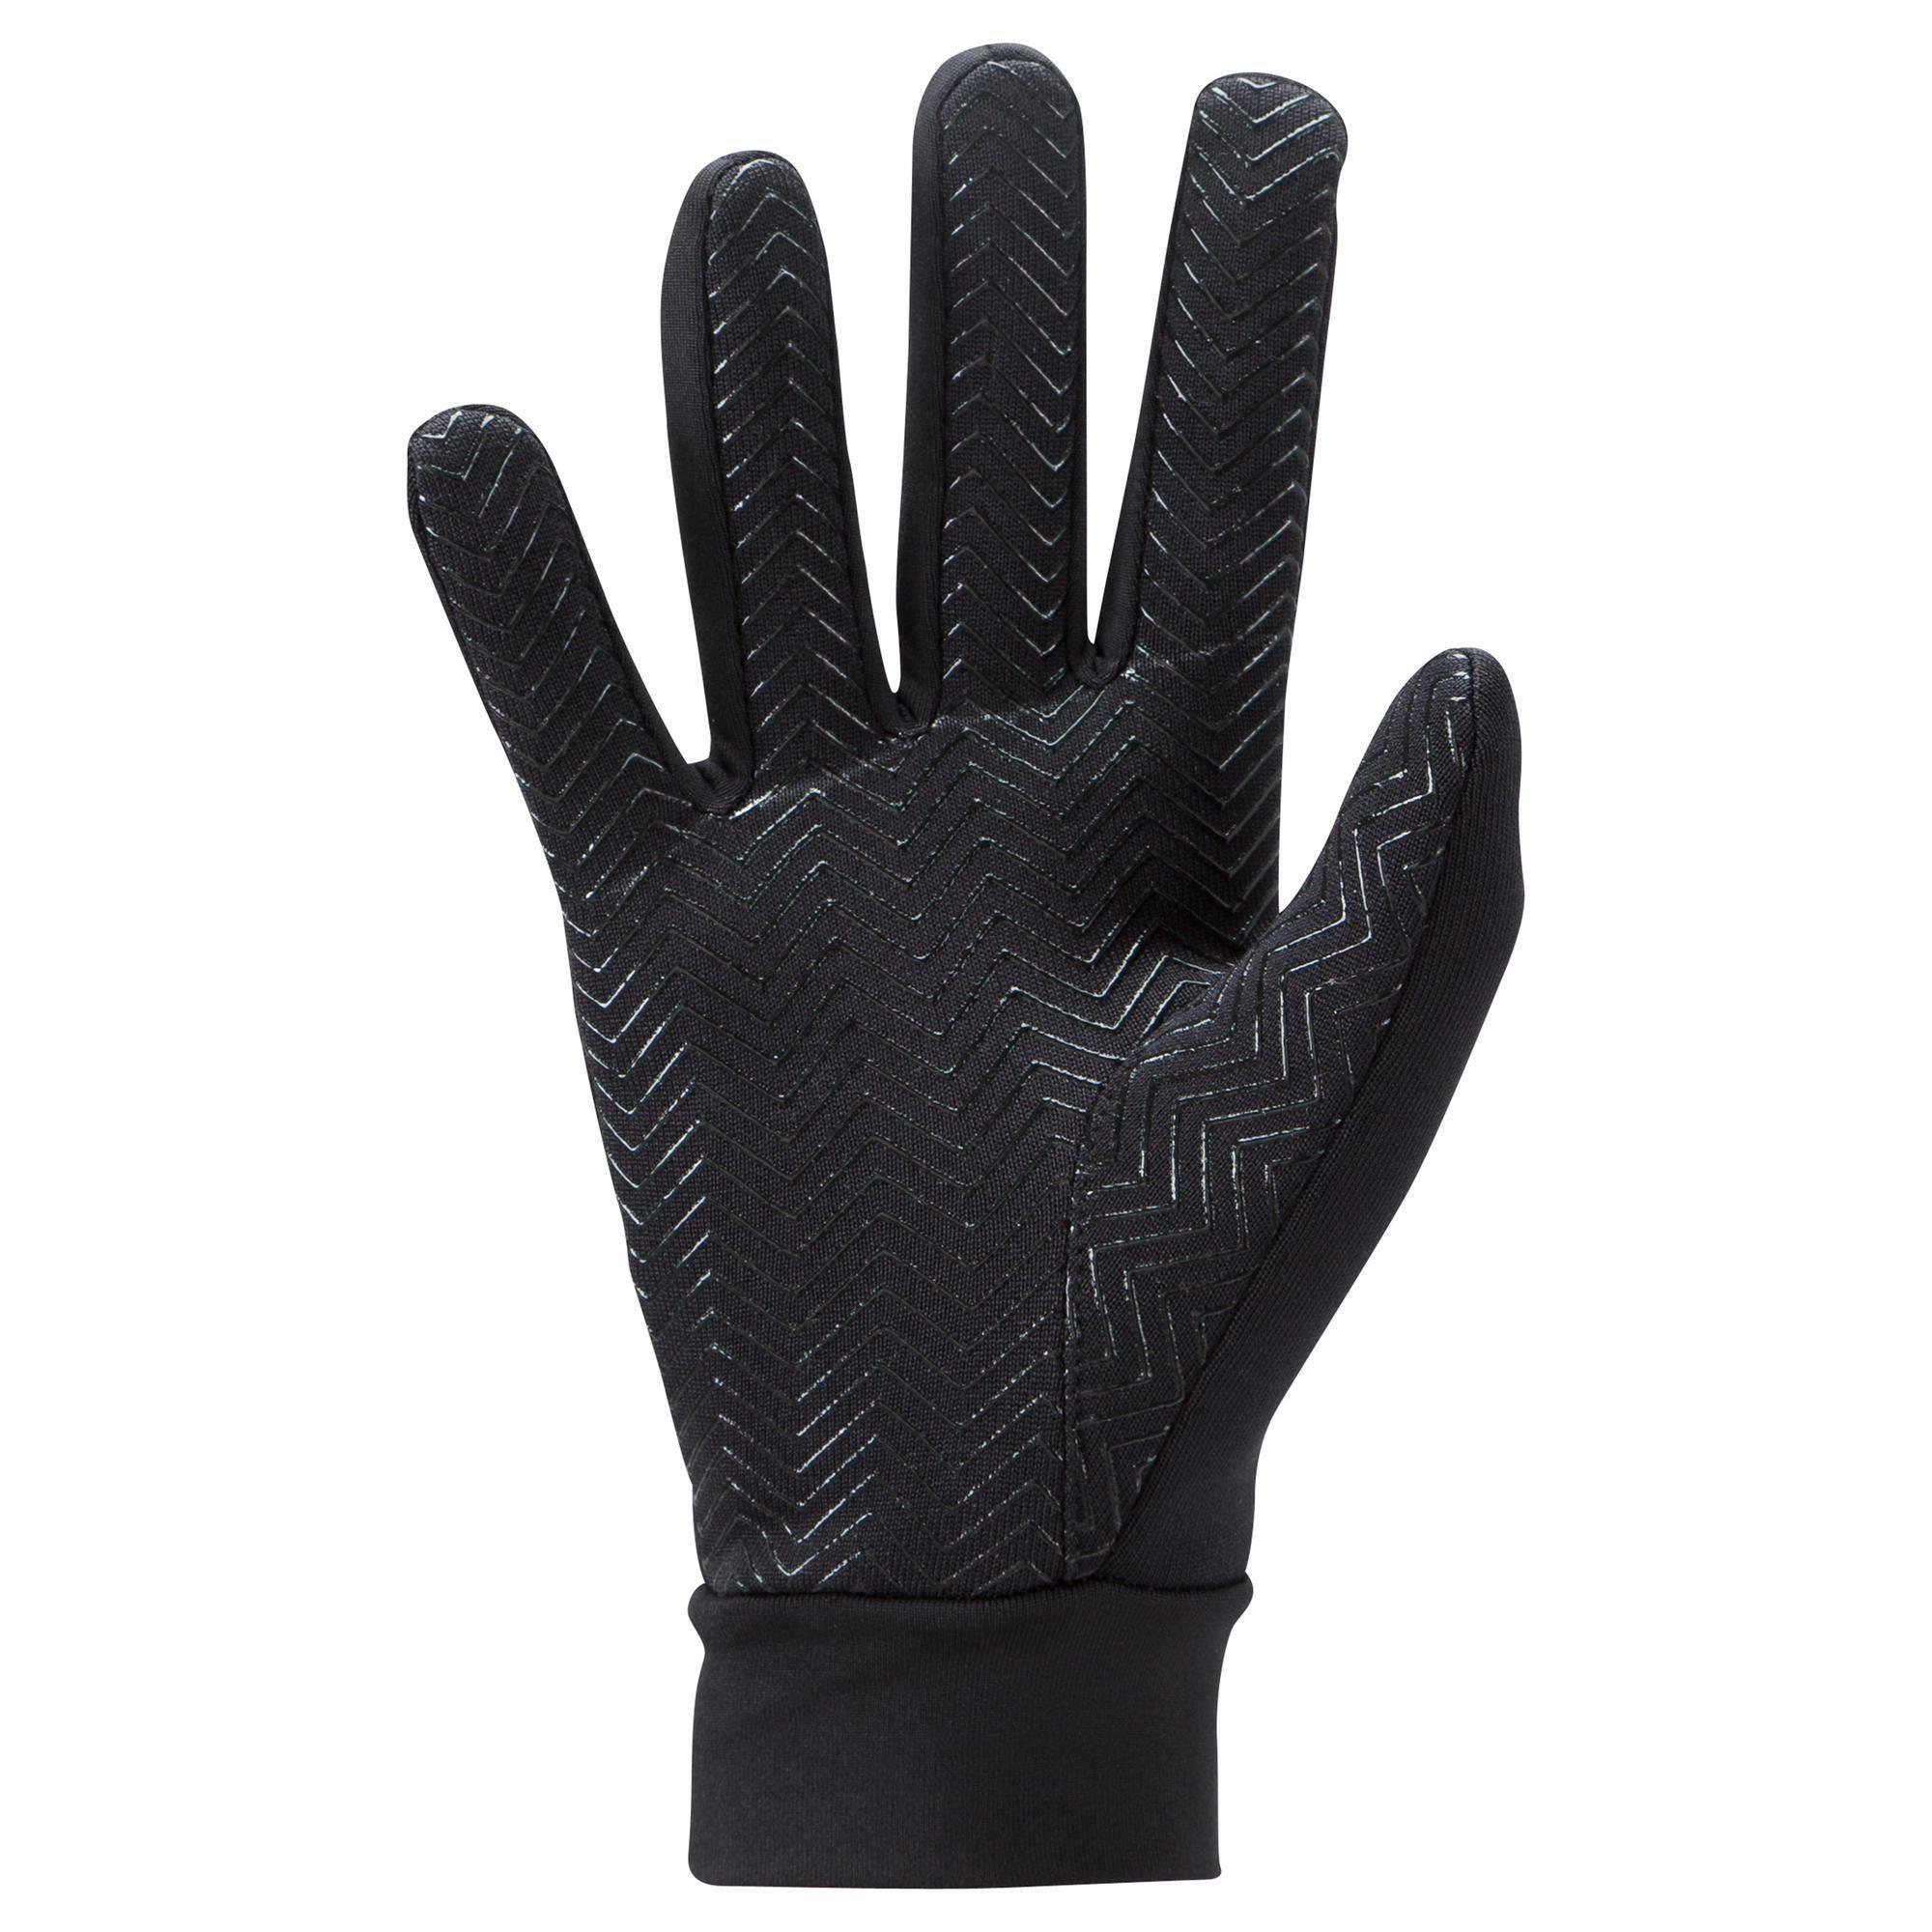 Kids' Football Gloves Keepdry 500 - Black 2/6